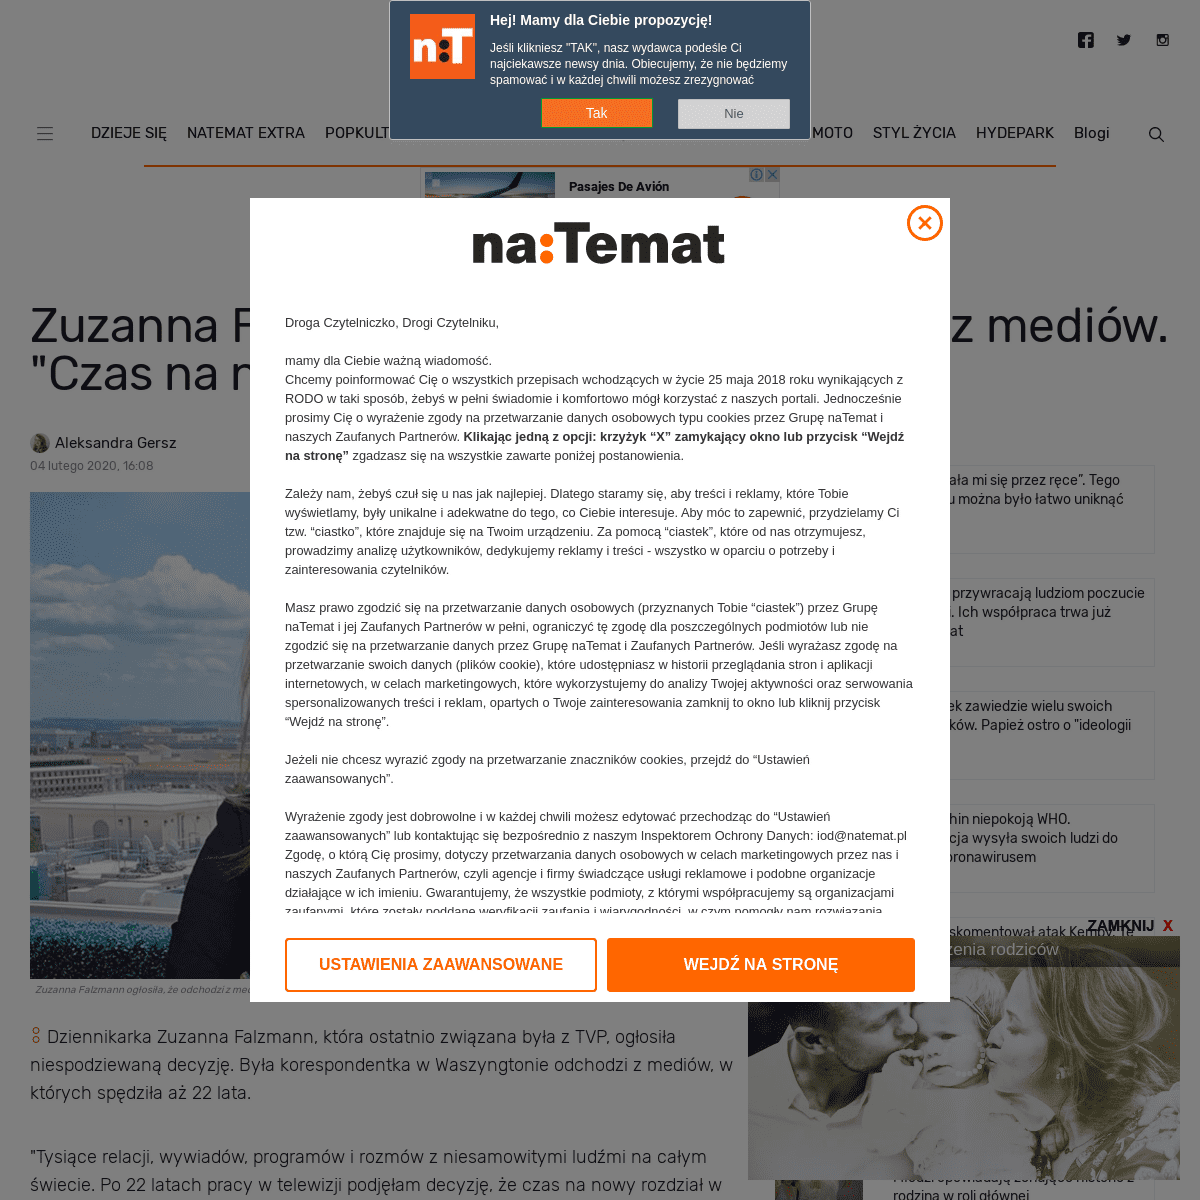 A complete backup of natemat.pl/298539